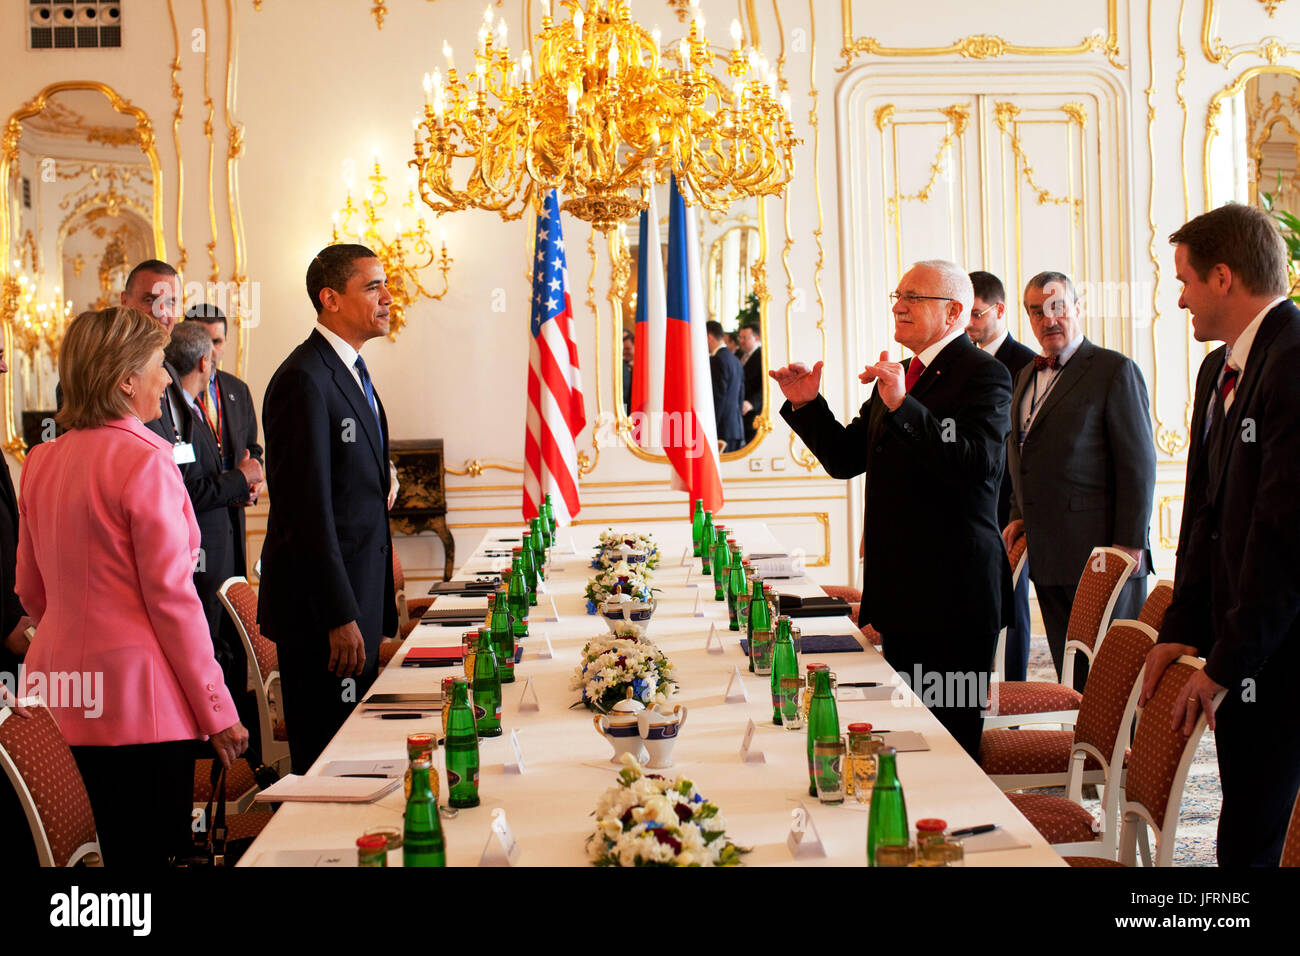 Le président Barack Obama est perçu à l'occasion d'une réunion bilatérale avec le président Vaclav Klaus et le Premier ministre Mirek Topolanek au Château de Prague, Prague, République tchèque. Photo Officiel de la Maison Blanche par Pete Souza Banque D'Images